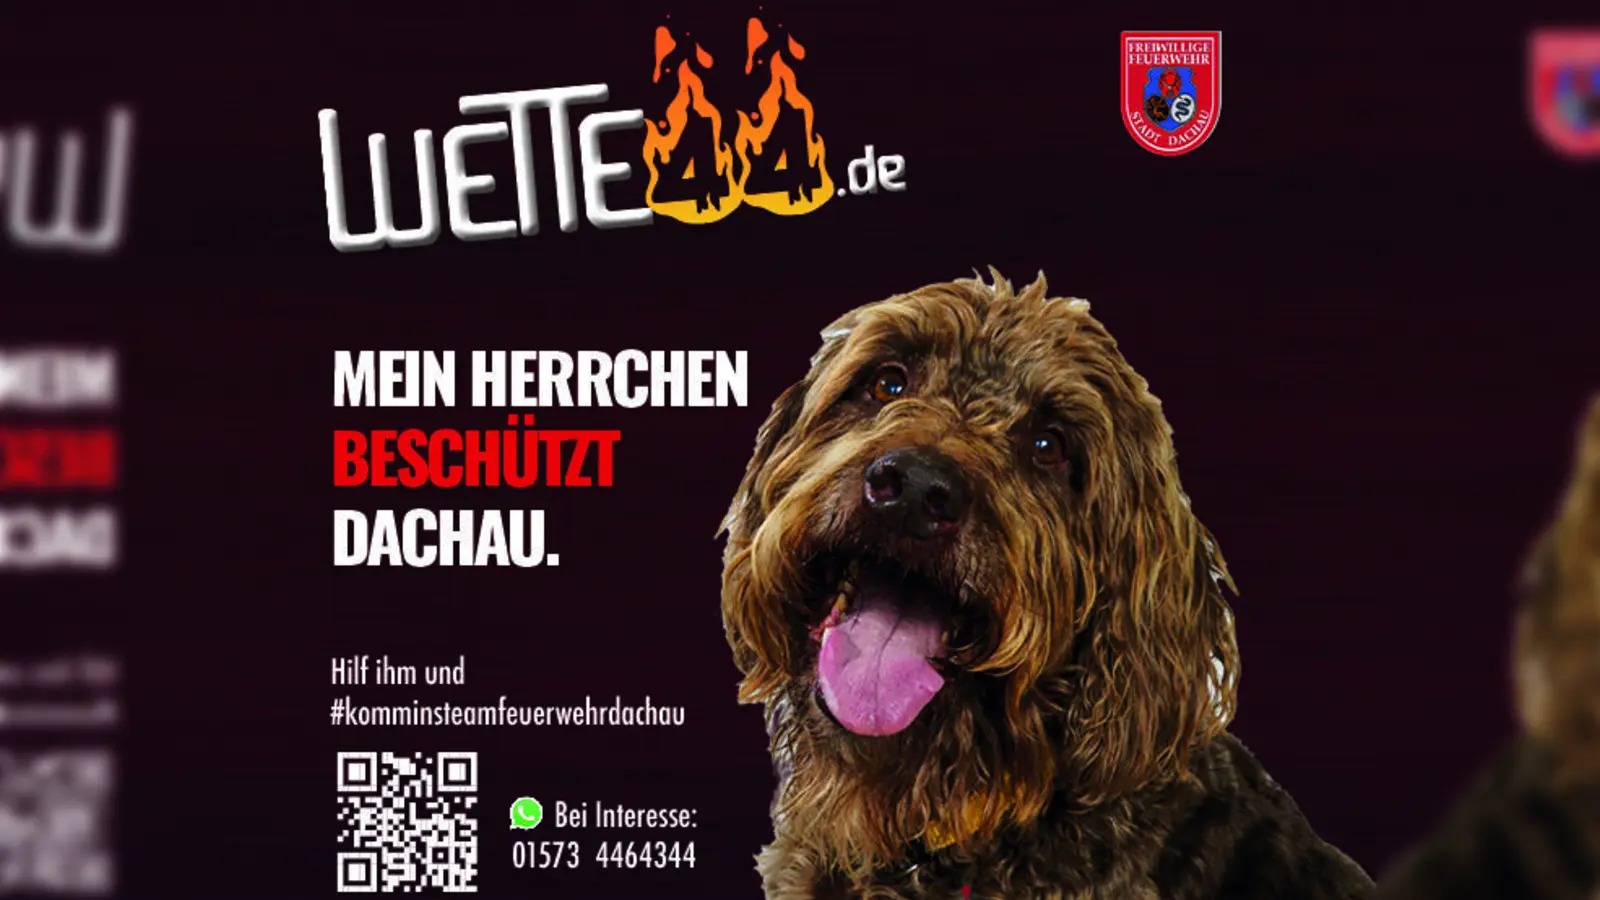 Mit Kind und Kegel und Hund wirbt die Dachauer Feuerwehr für ehrenamtliches Engagement. (Foto: Weimer & Paulus)